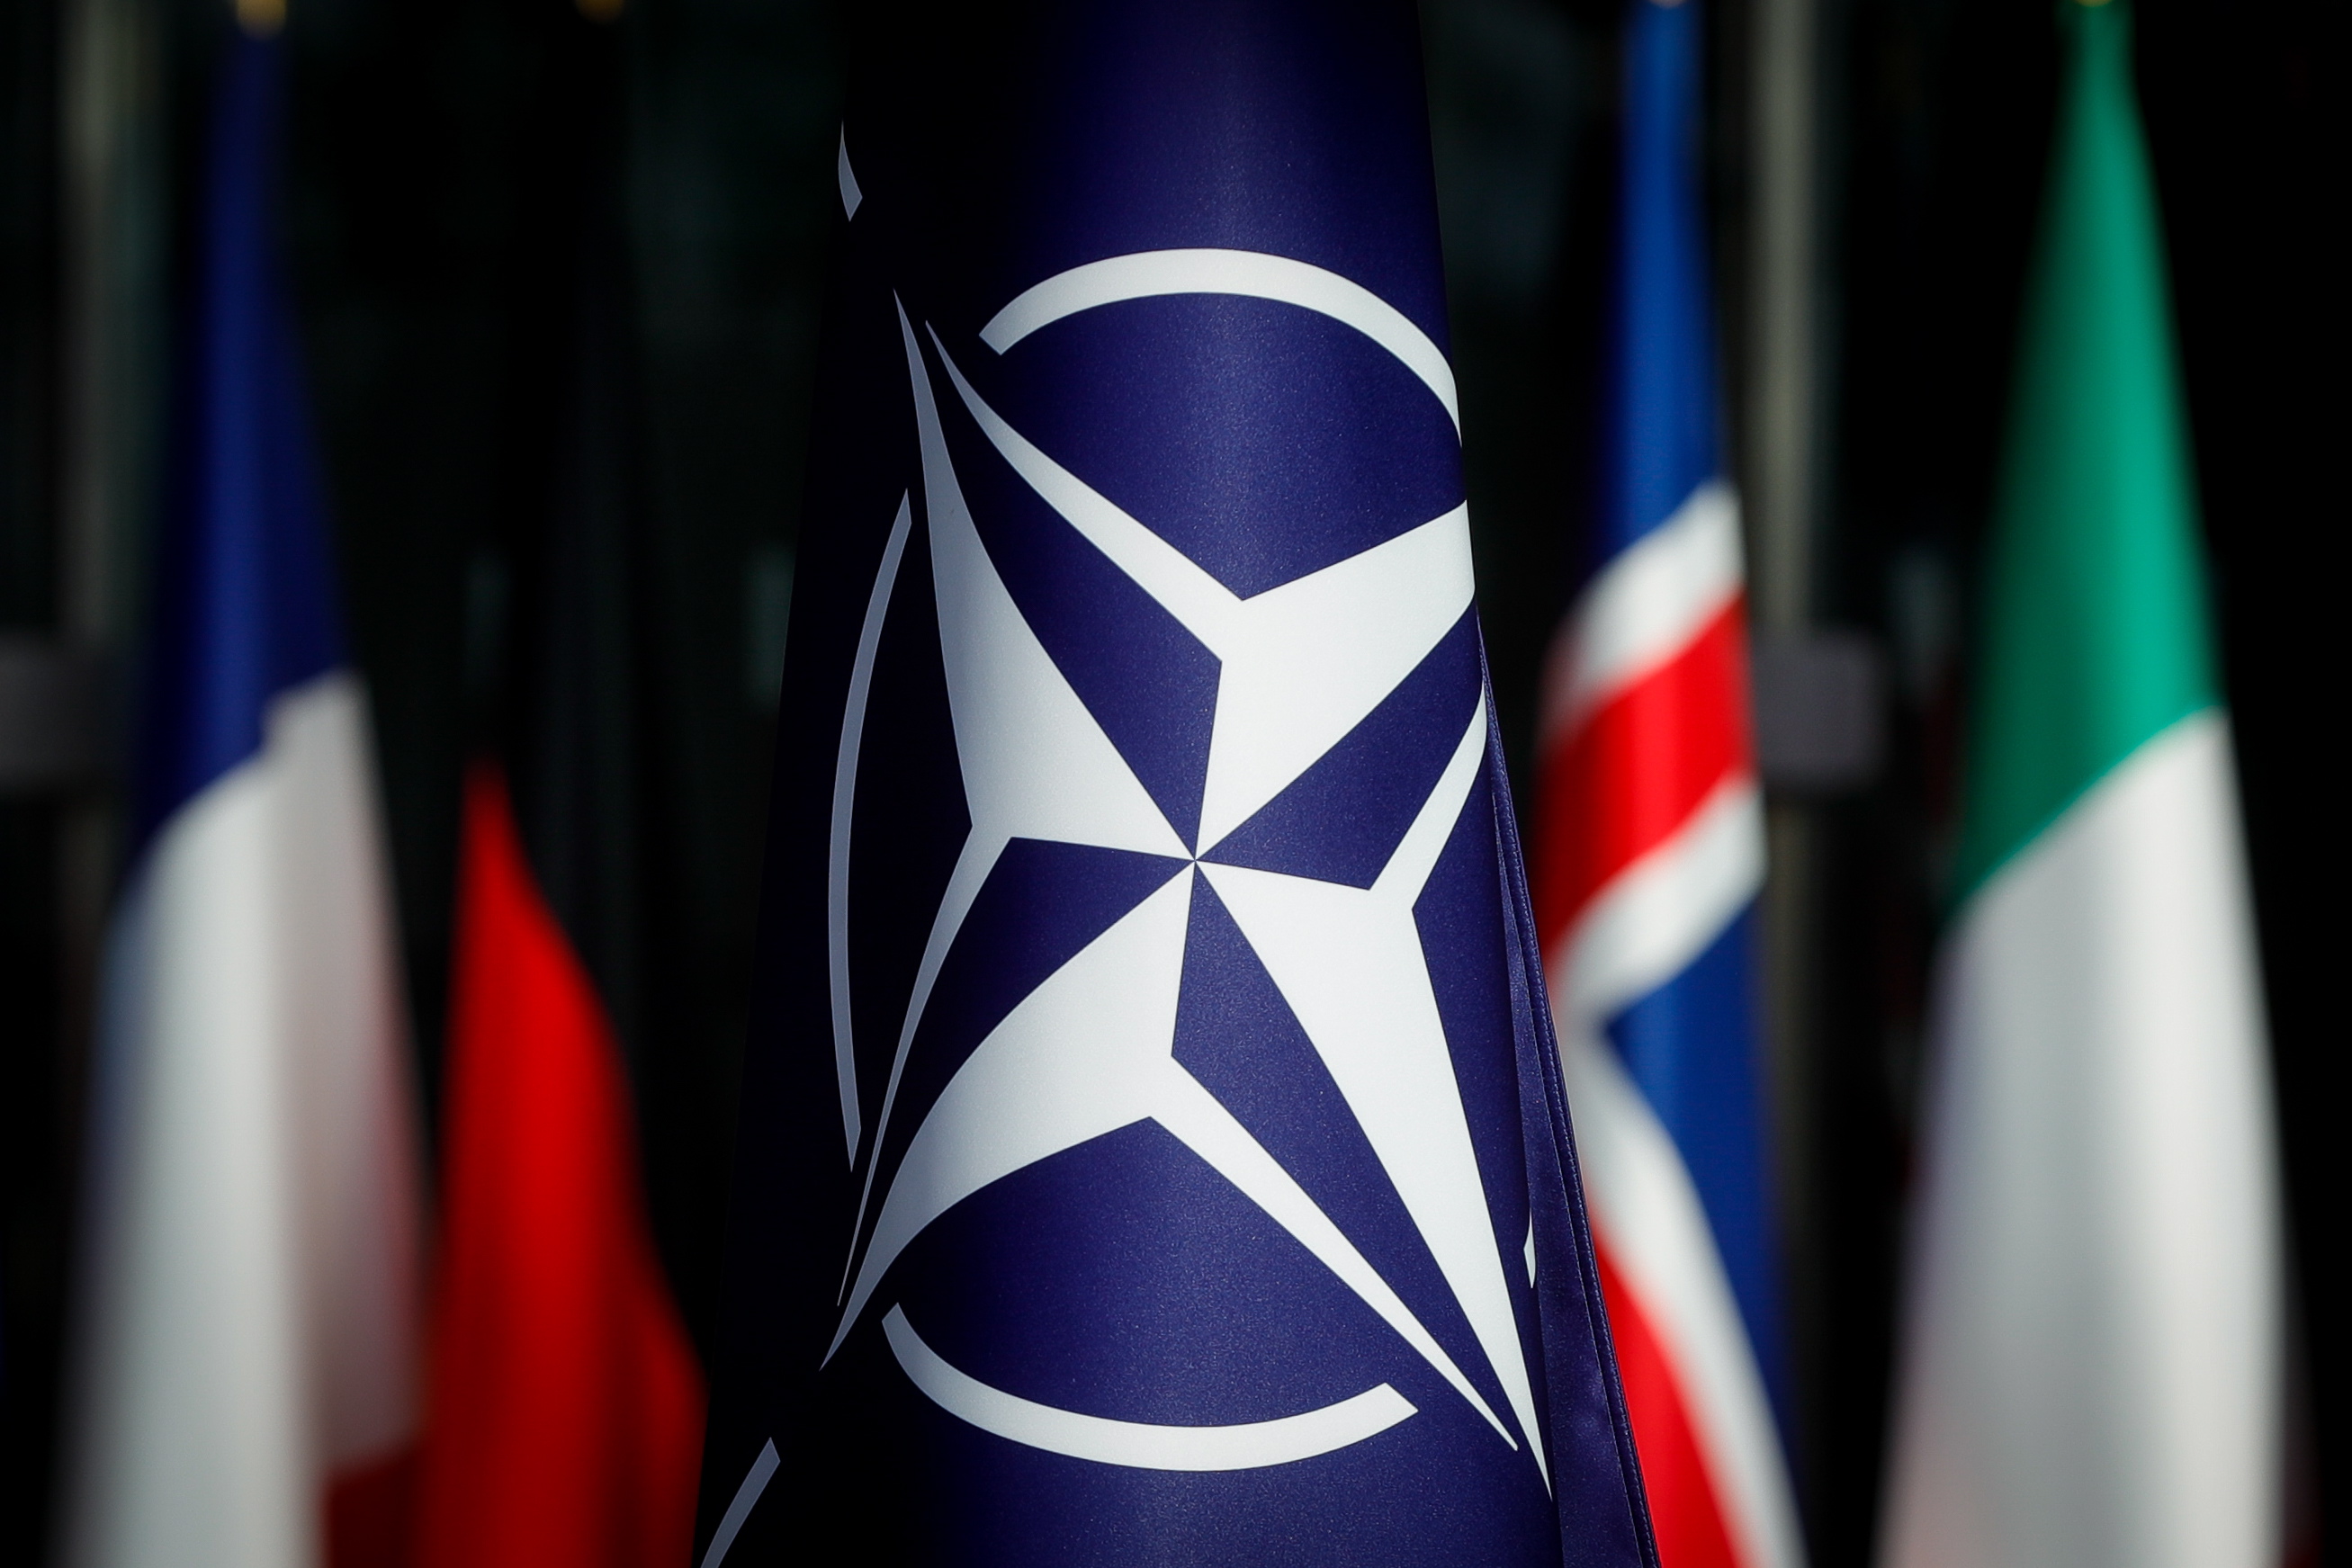 Политолог Дробницкий оценил заявление замглавы МИД Грушко о создании контругроз для НАТО